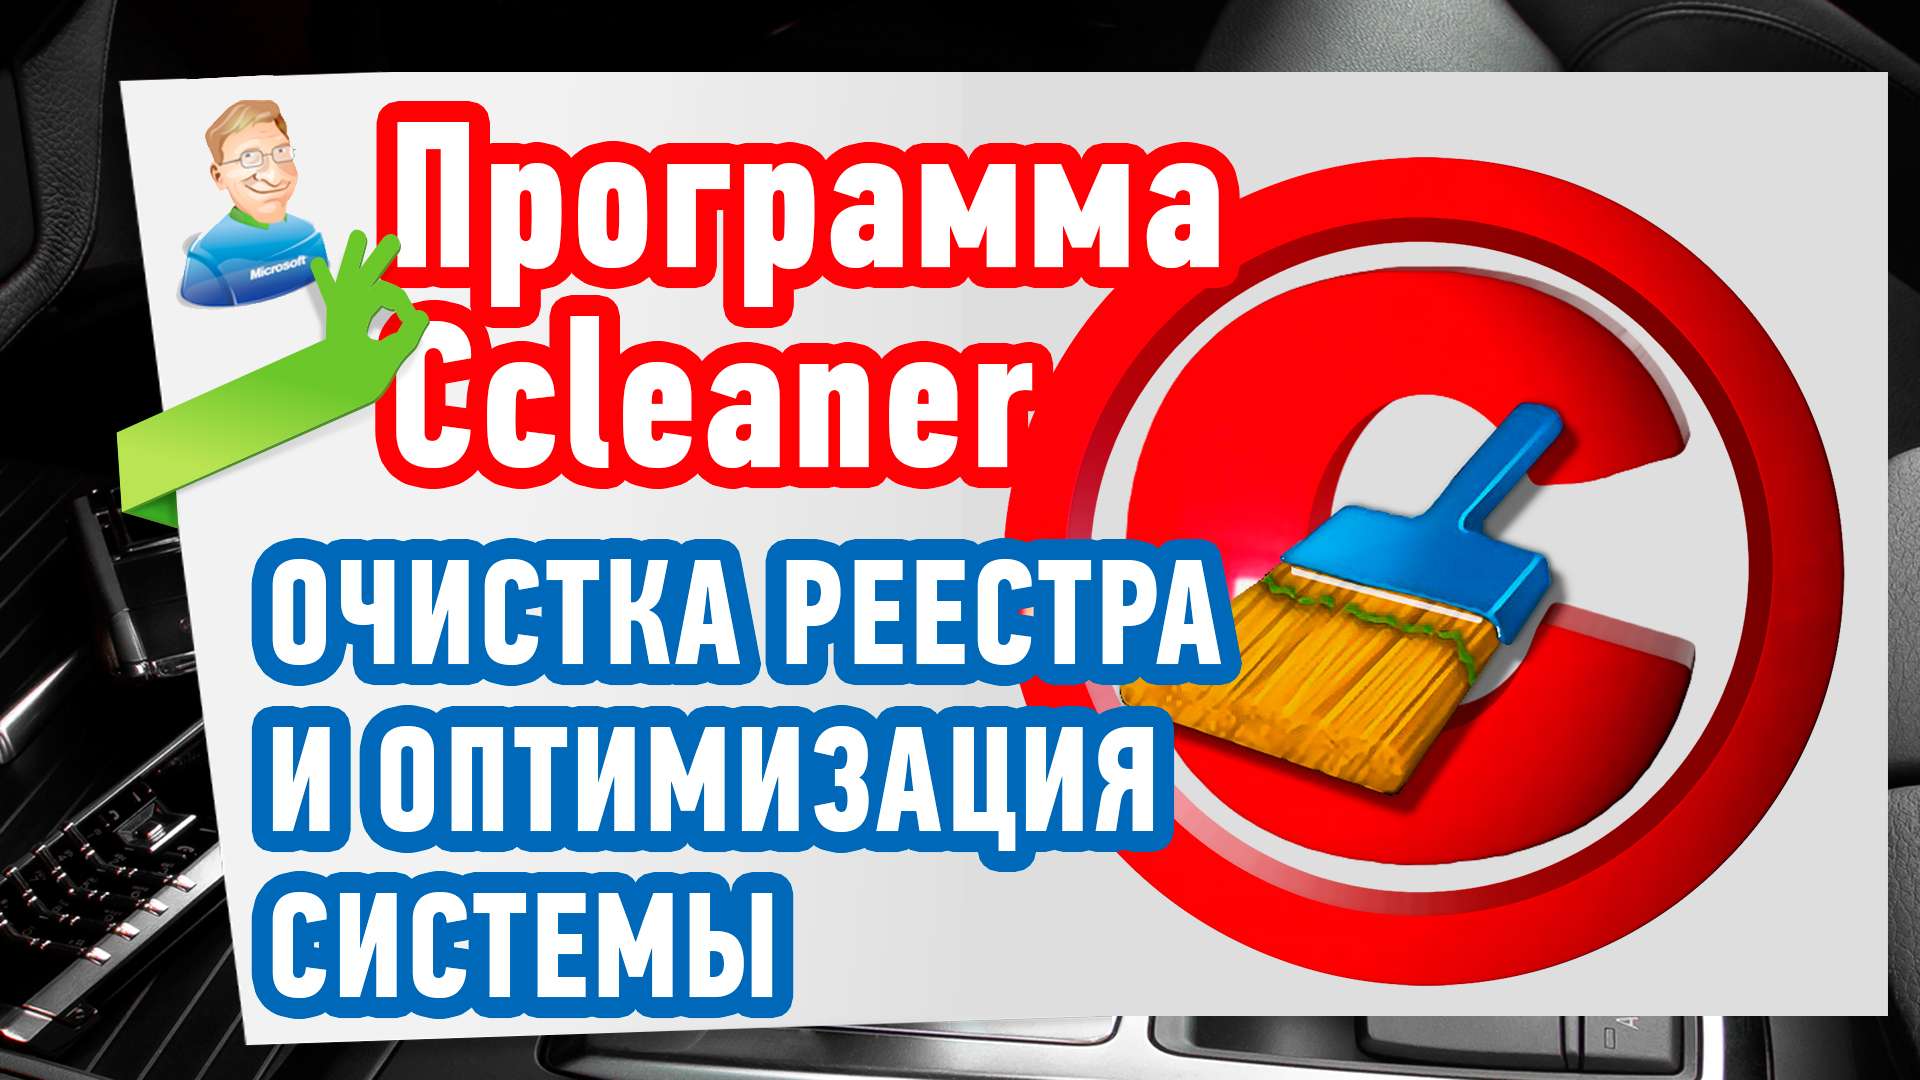 Как почистить реестр? Ccleaner — Программа для чистки реестра